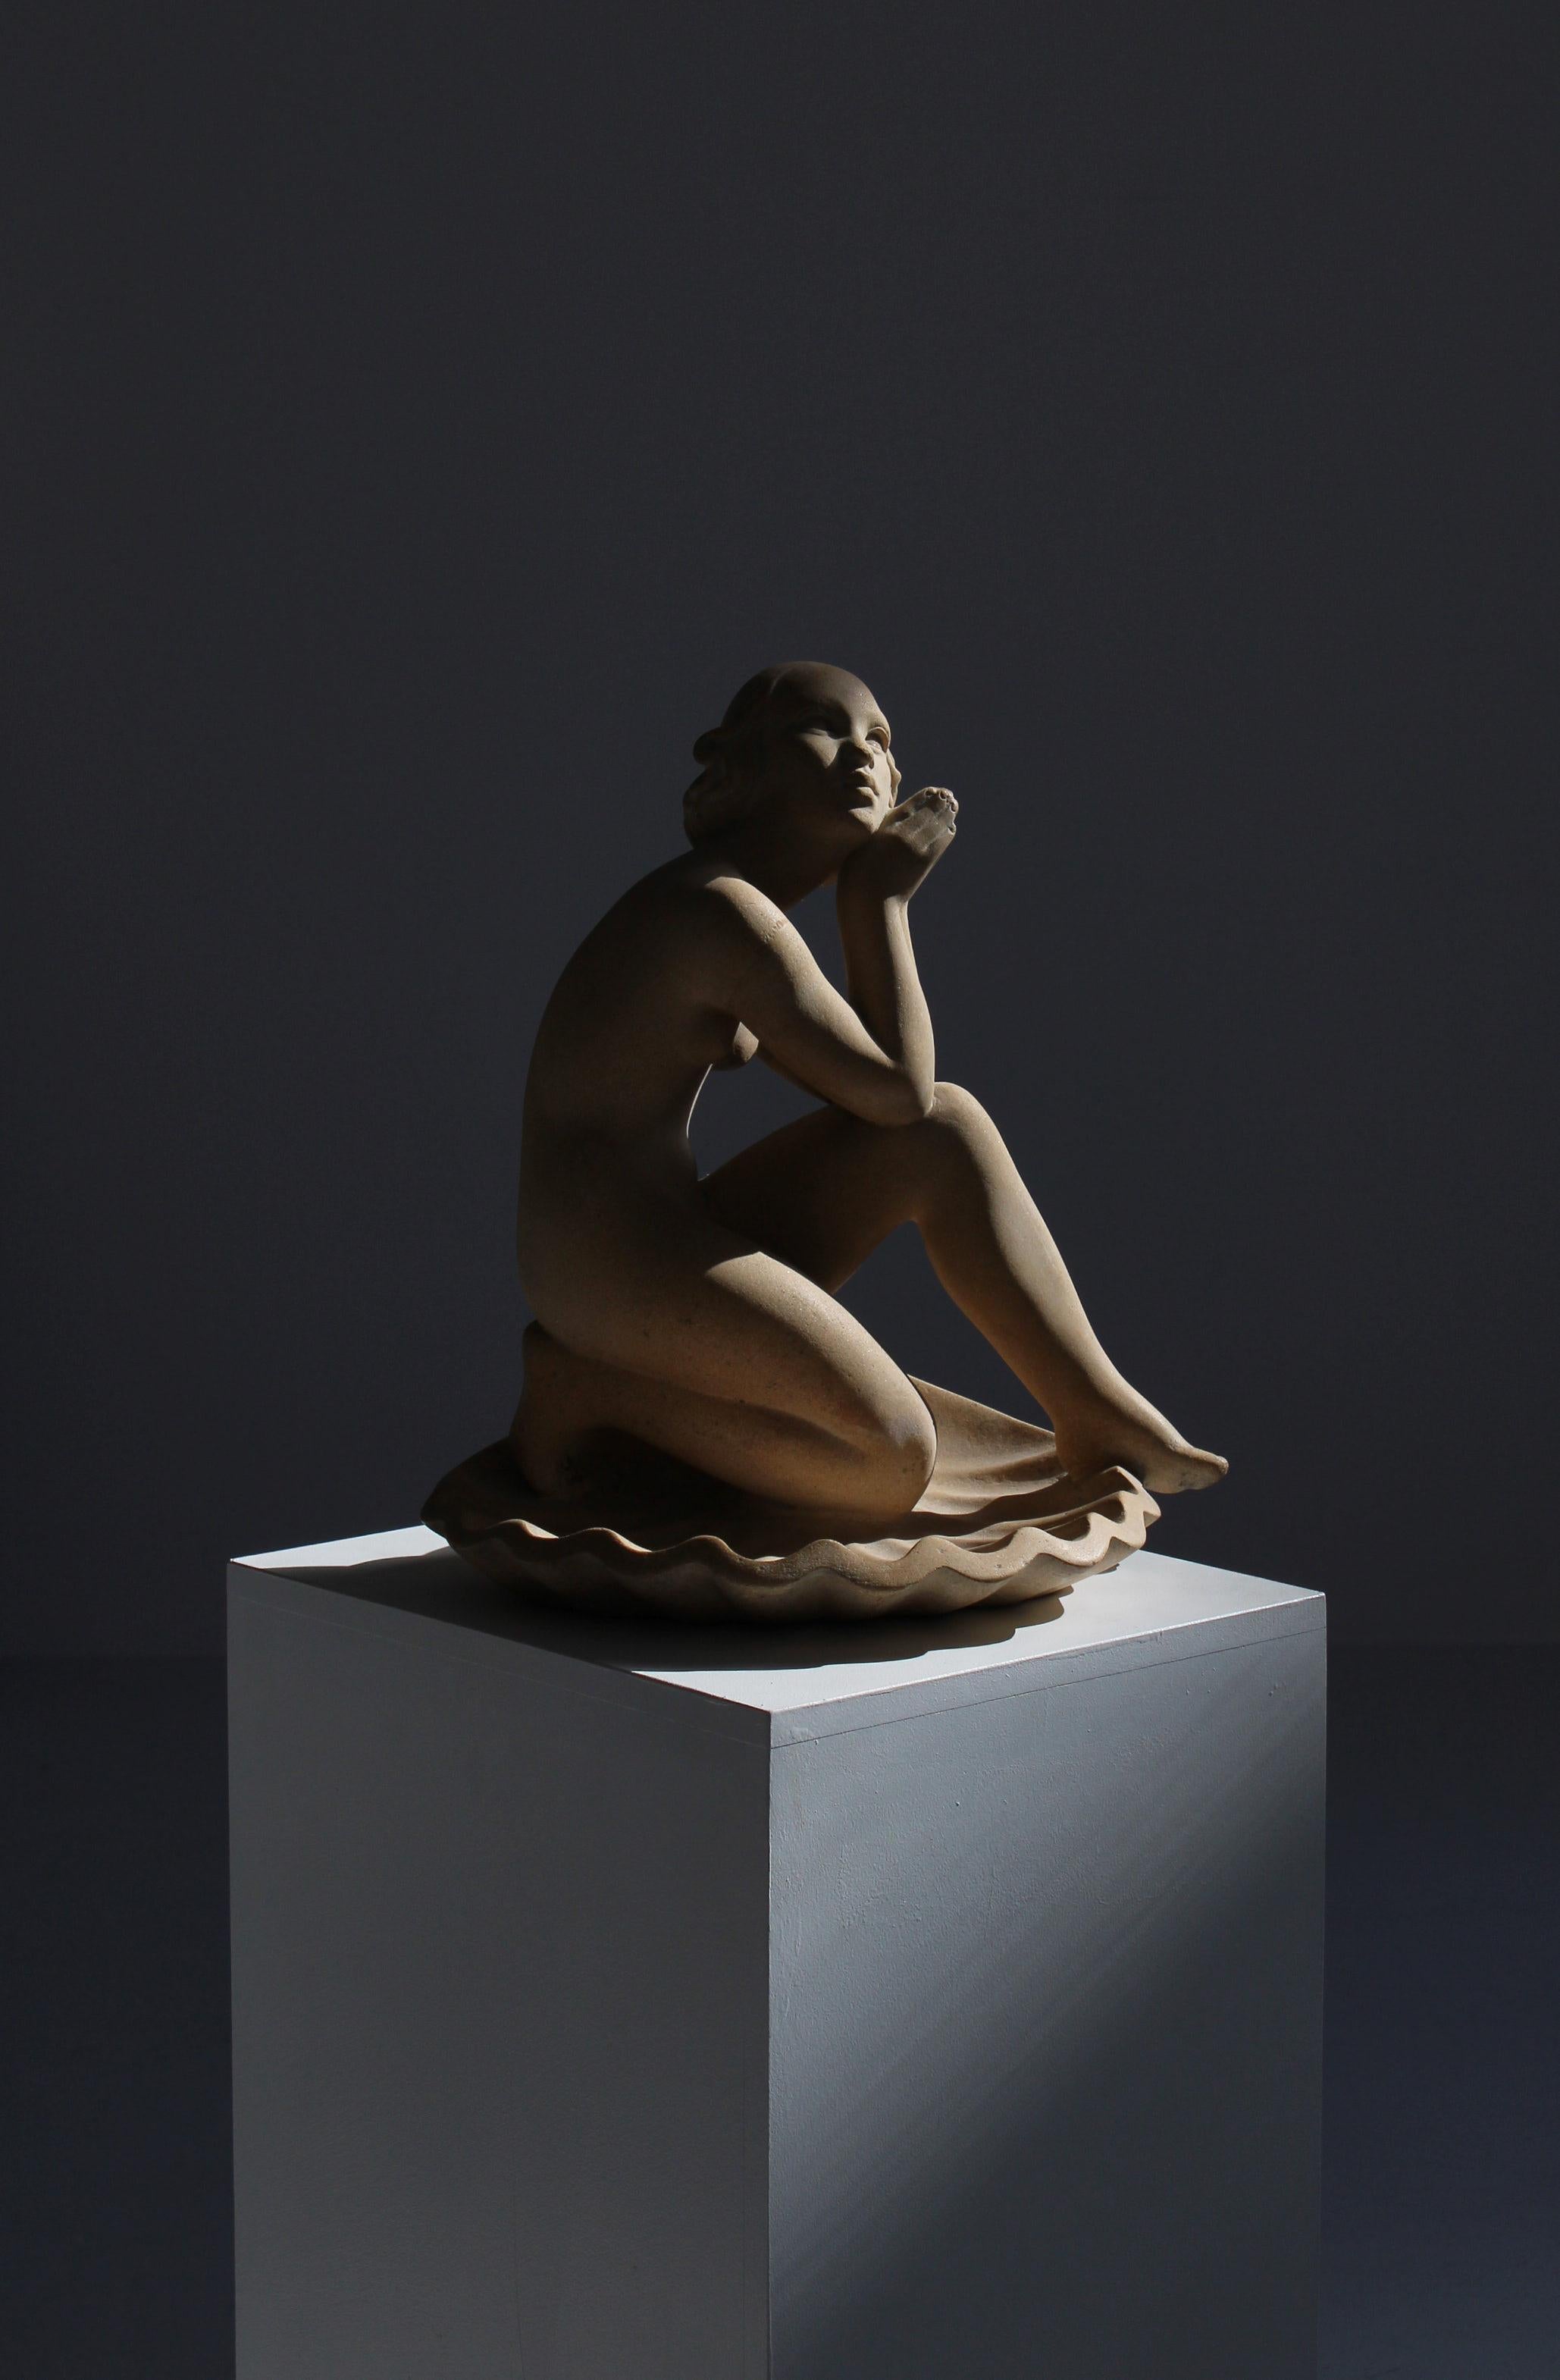 Große schöne figurative Skulptur des dänischen Künstlers Jens Jacob Bregnø im Jugendstil. Die Skulptur ist aus rohem Sandstein gefertigt und vom Künstler signiert. Es zeigt eine weibliche Figur, die auf einer Jakobsmuschel sitzt -